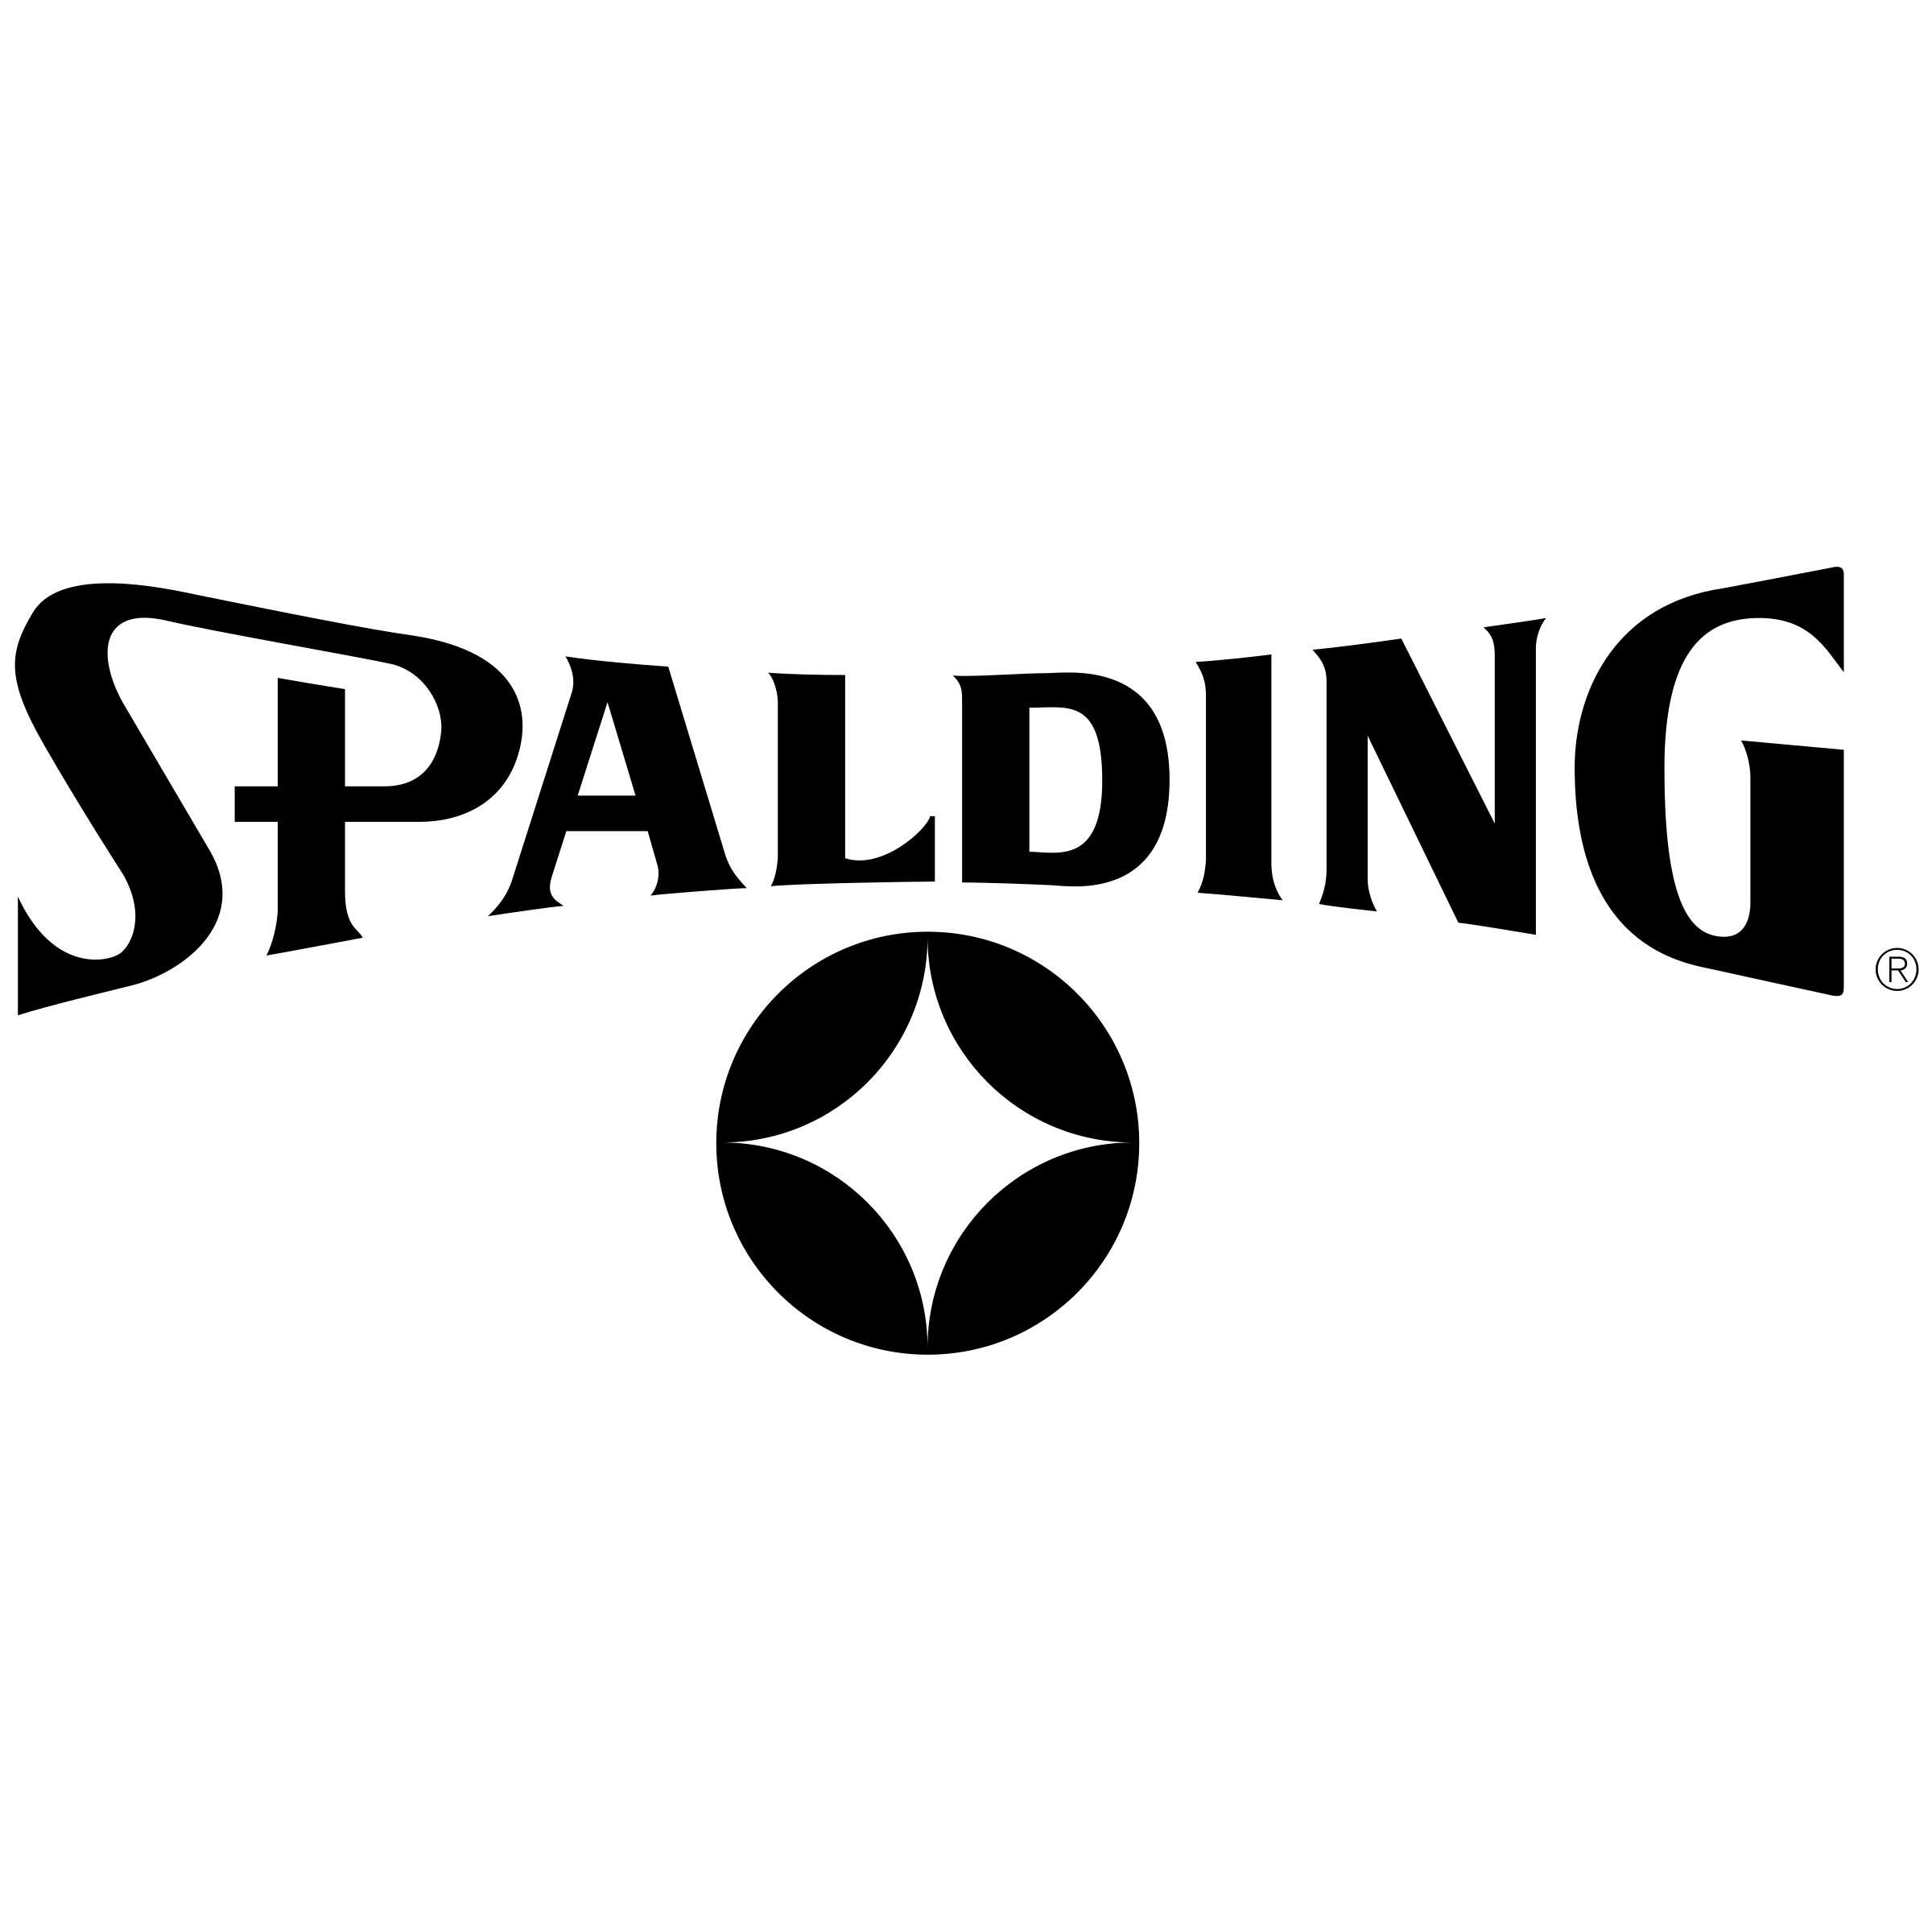 Spaulding Logo - Spalding Logo PNG Transparent & SVG Vector - Freebie Supply